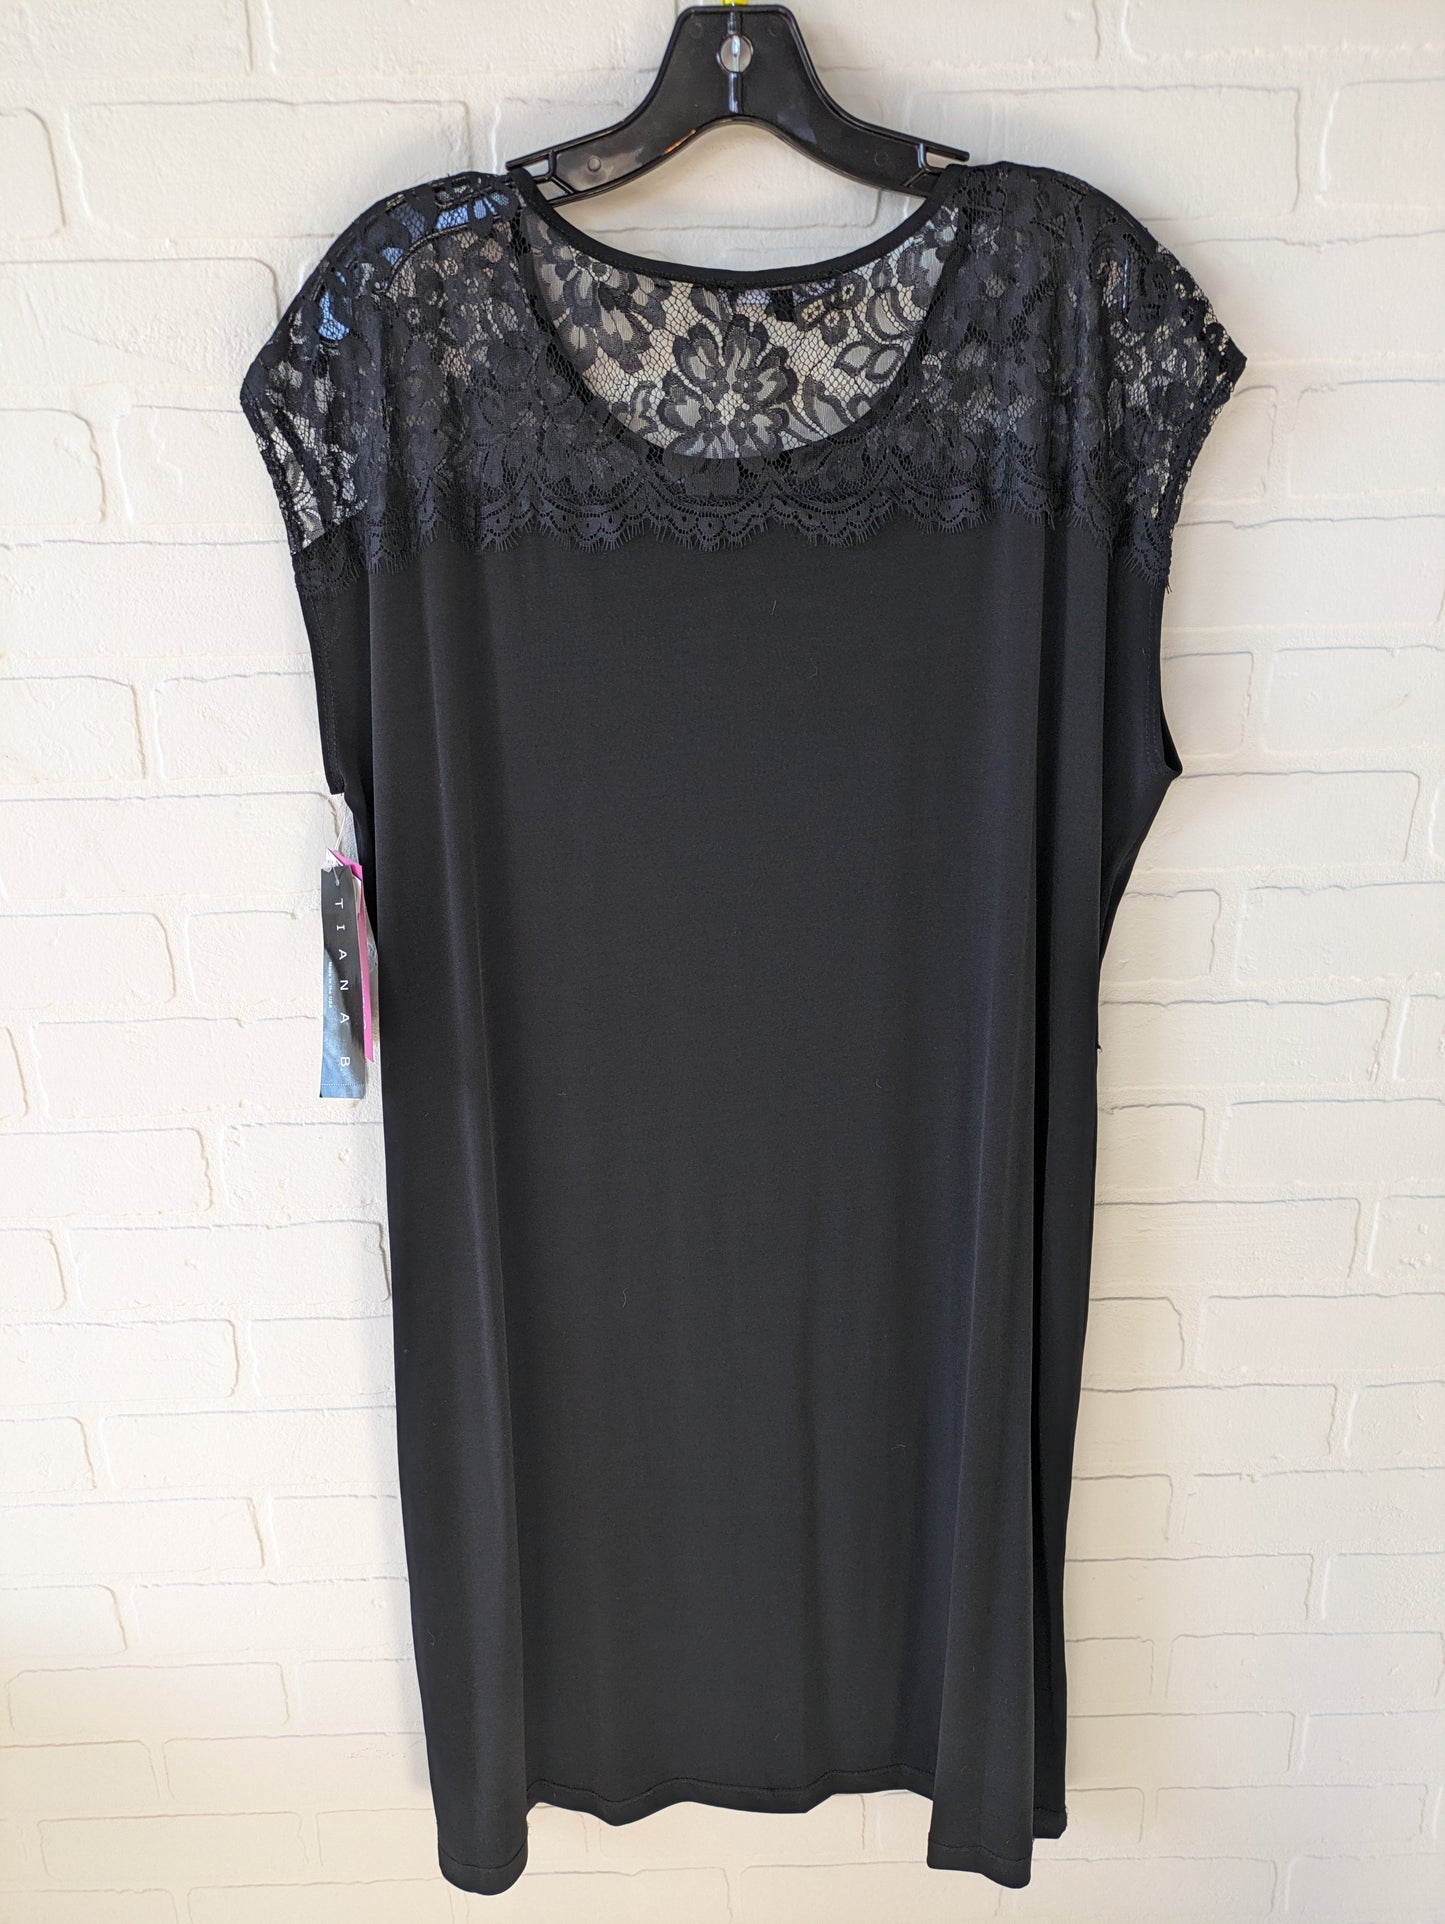 Dress Casual Midi By Tiana B  Size: 2x